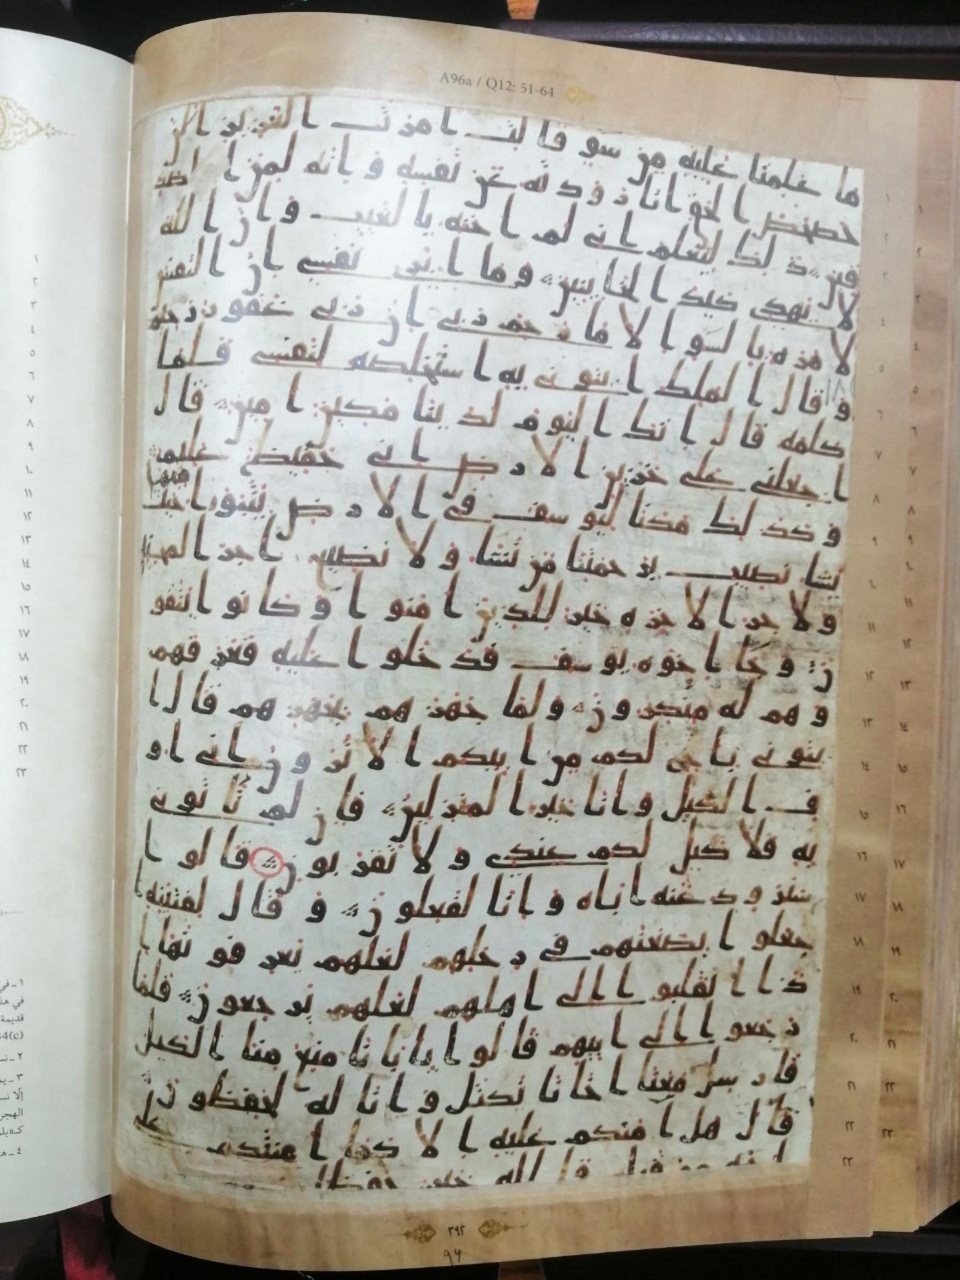 اهدای کپی یک نسخه خطی قرآن کریم به مرکز نسخ خطی آستان قدس عباسی

